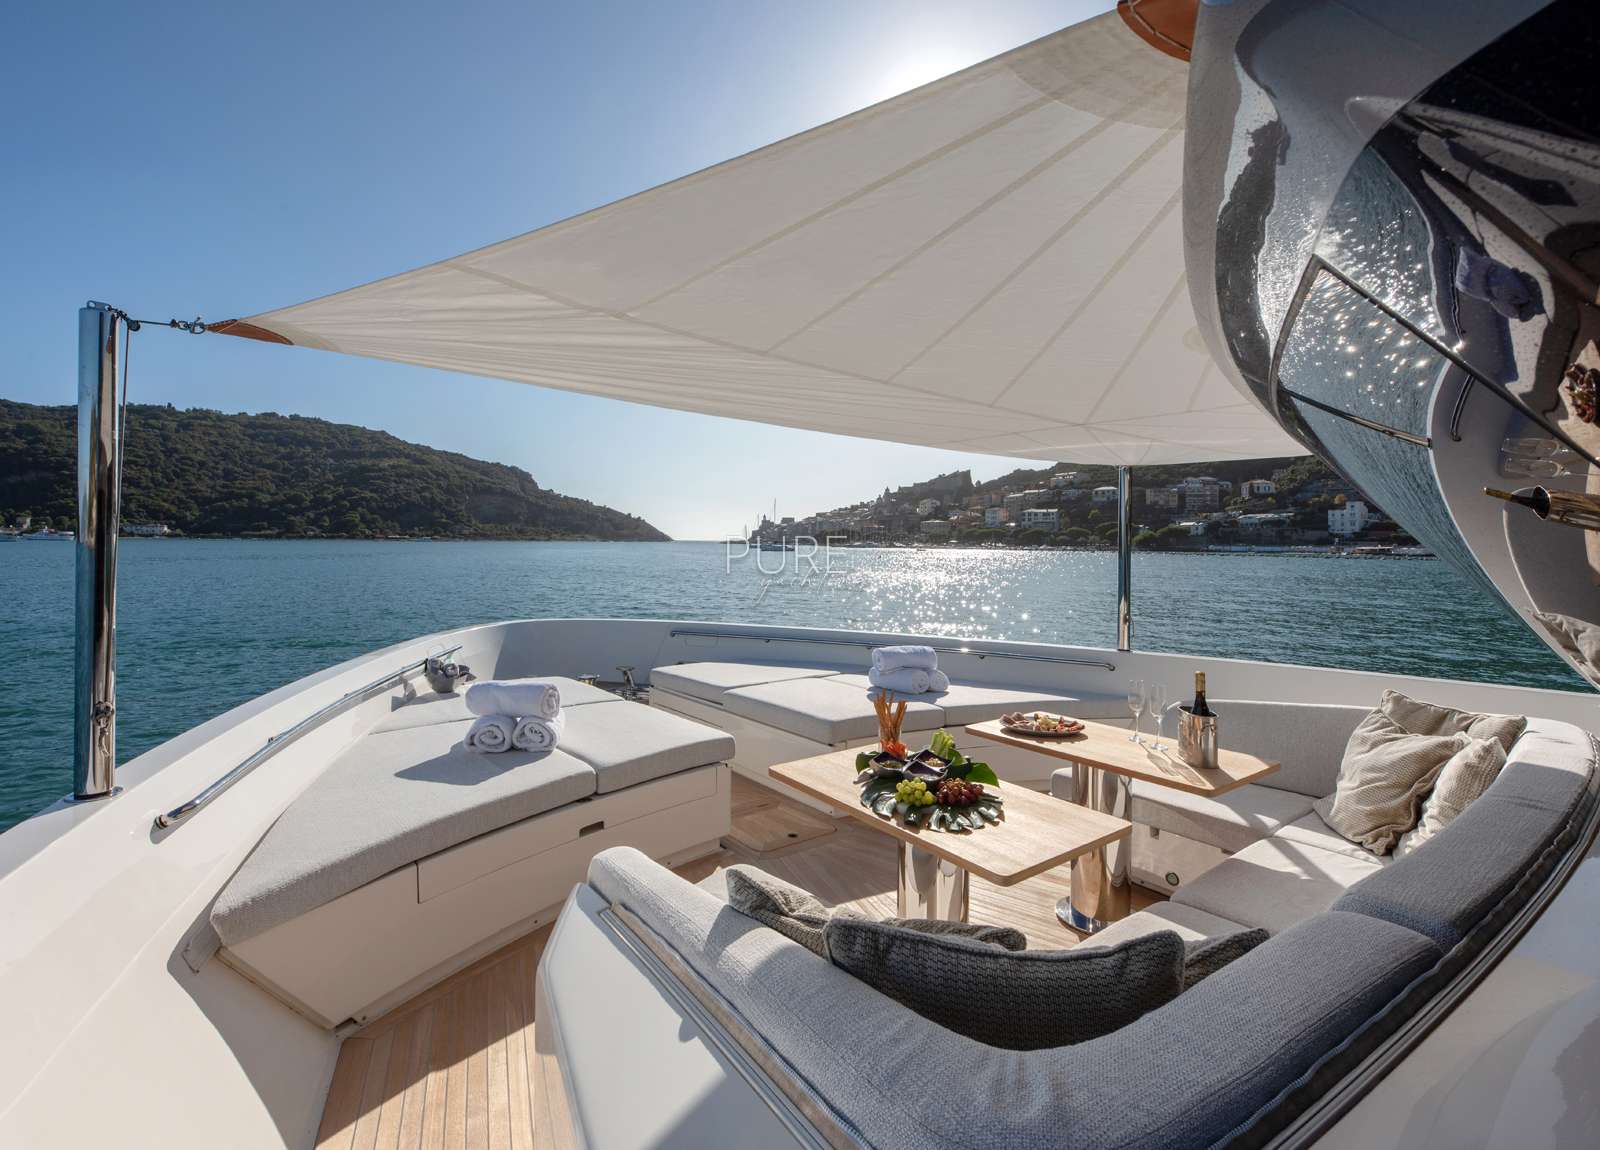 sunbeds charter luxusyacht sanlorenzo sx88